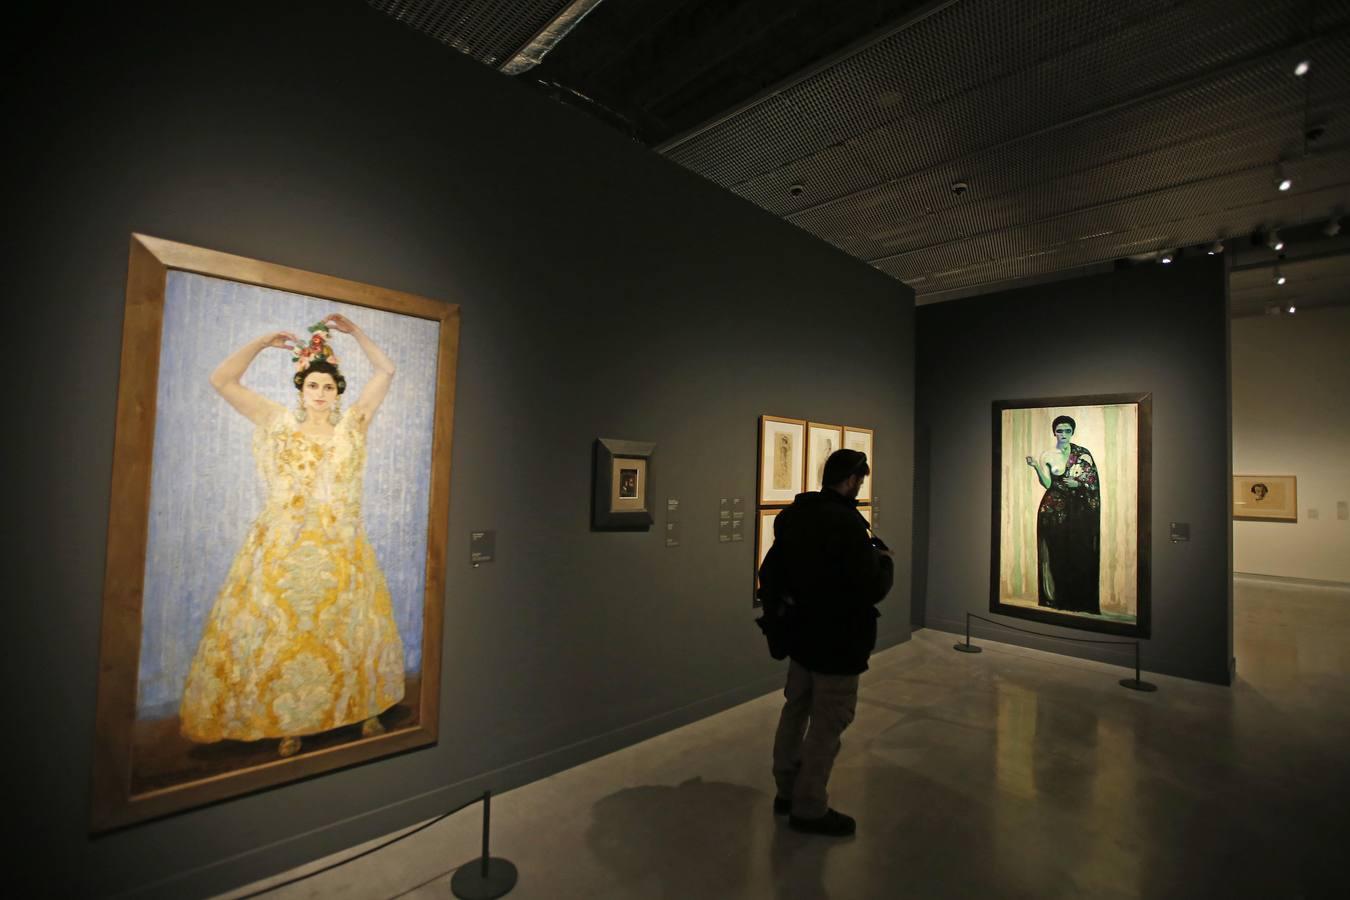 El recién estrenado CaixaForum de Sevilla es el tercer centro cultural en tamaño de la Fundación La Caixa